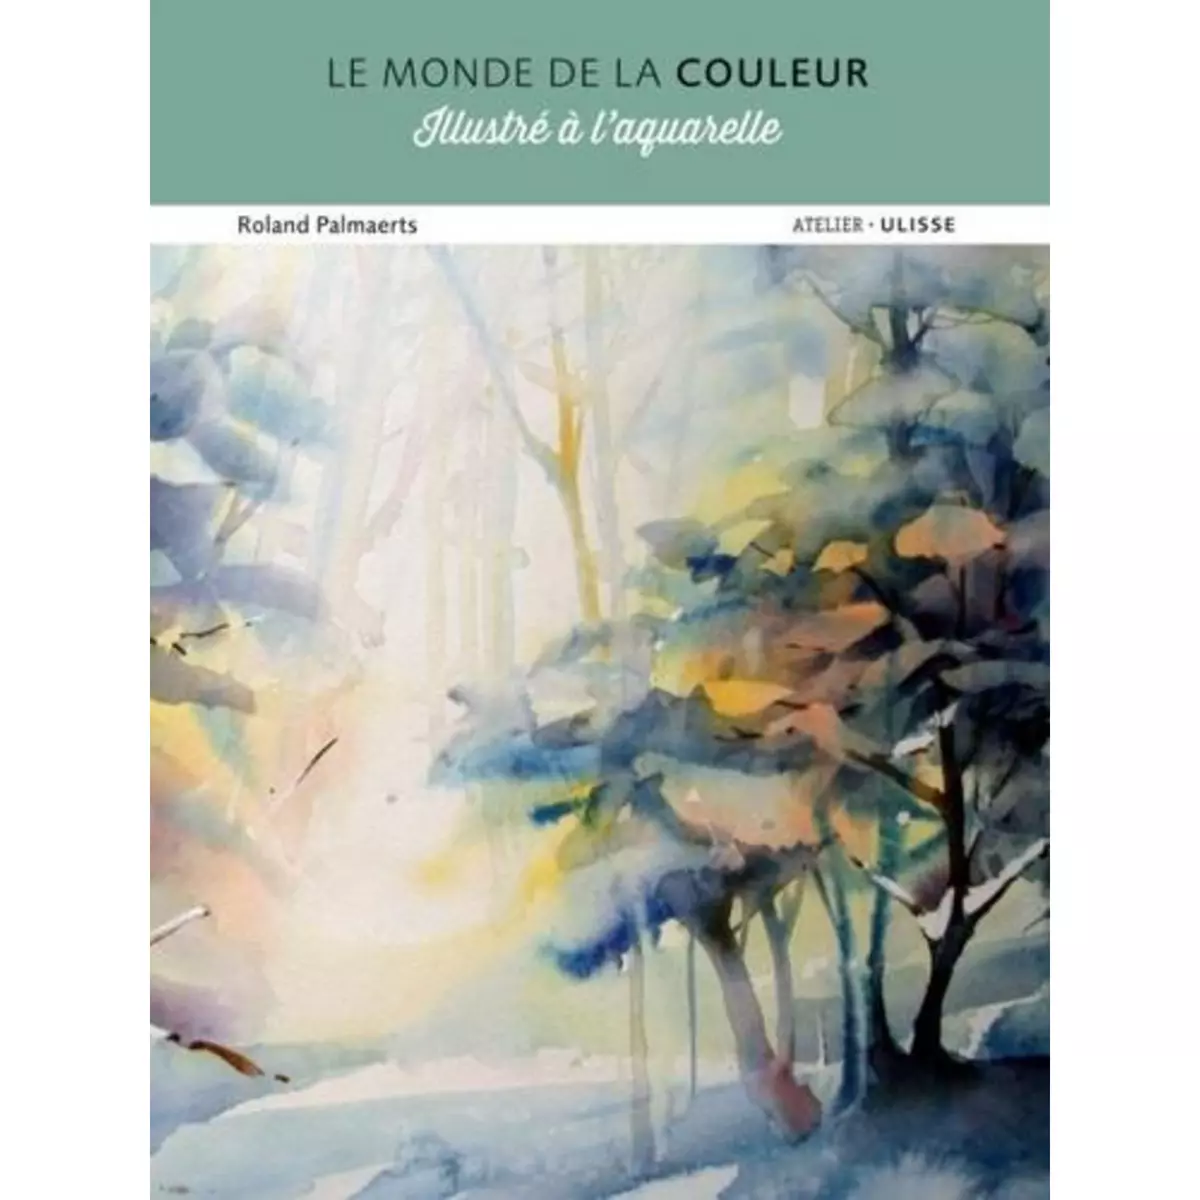  LE MONDE DE LA COULEUR ILLUSTRE A L'AQUARELLE, Palmaerts Roland